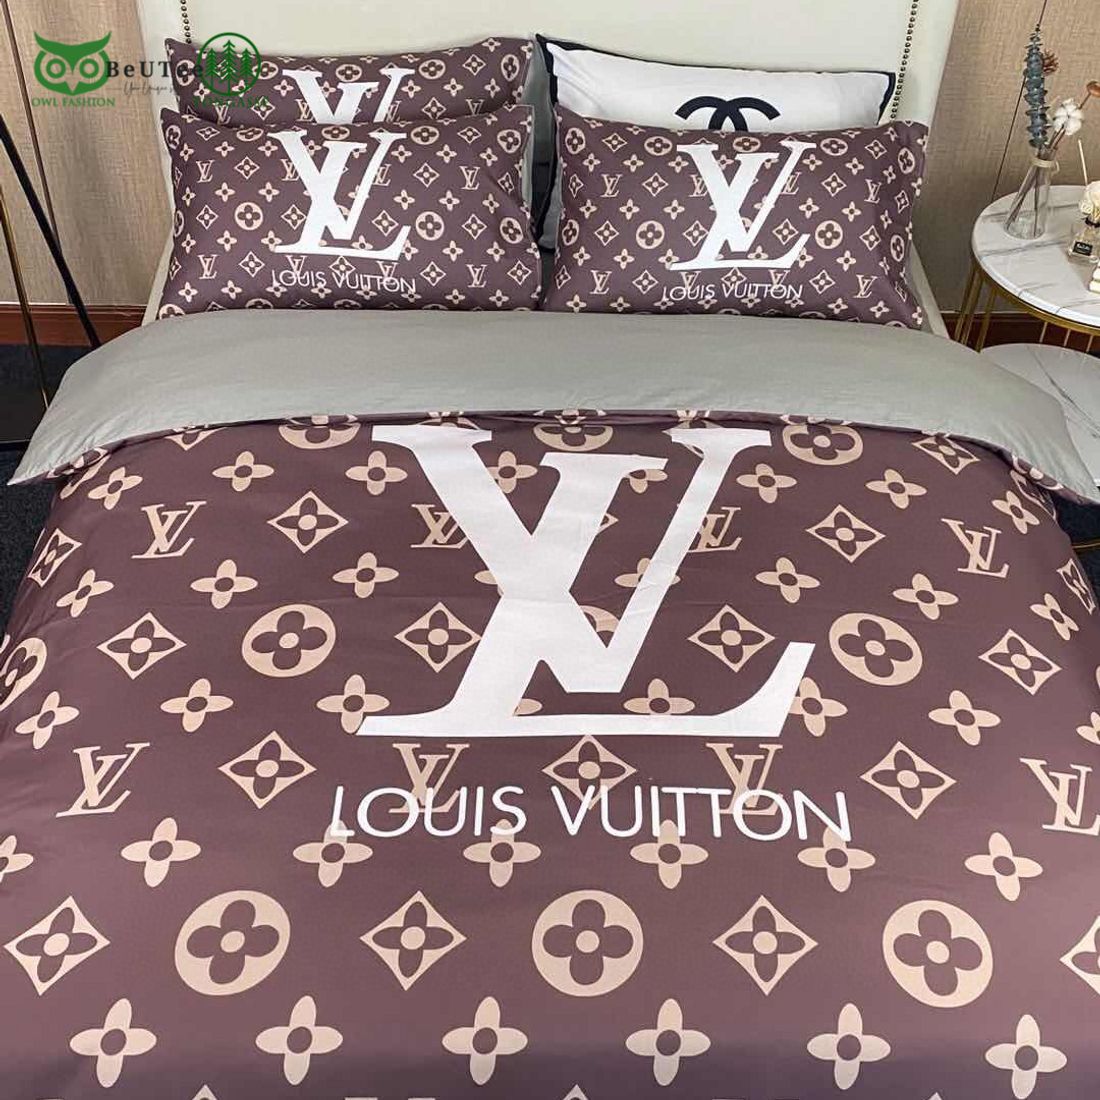 lv louis vuitton brown luxury brand bedding set 1 wfqrX